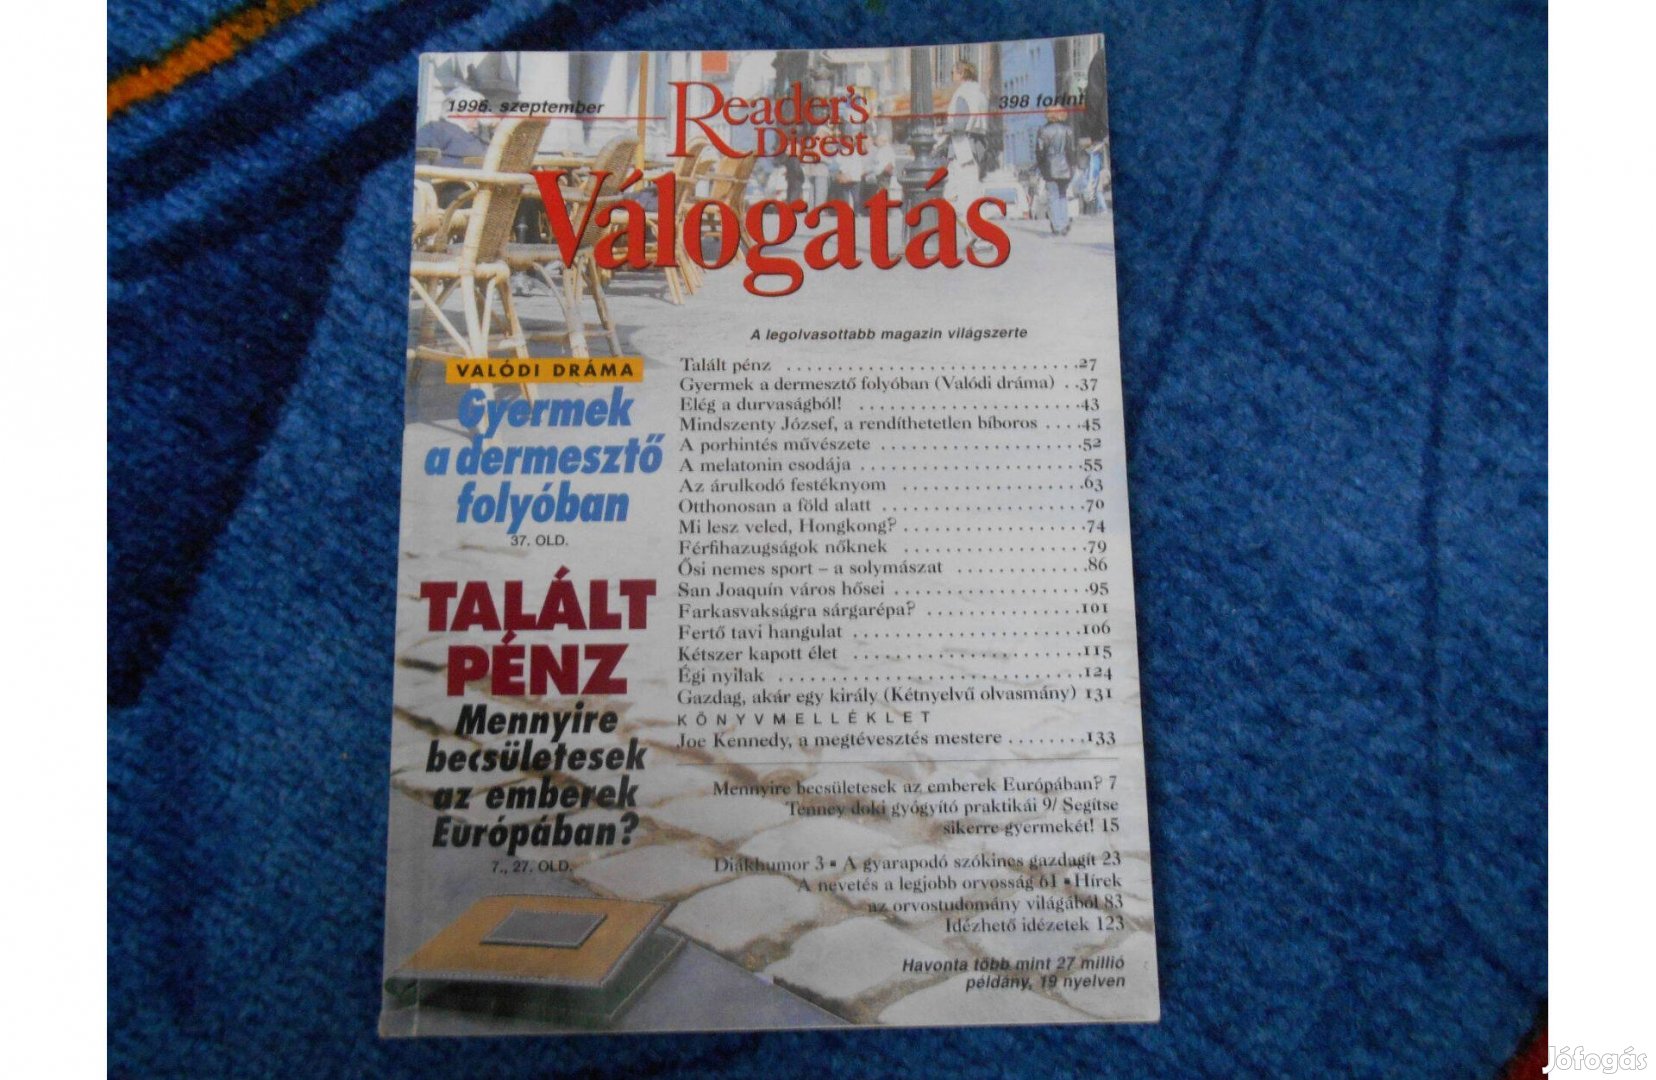 Reader's Digest magazin 1996 szeptember